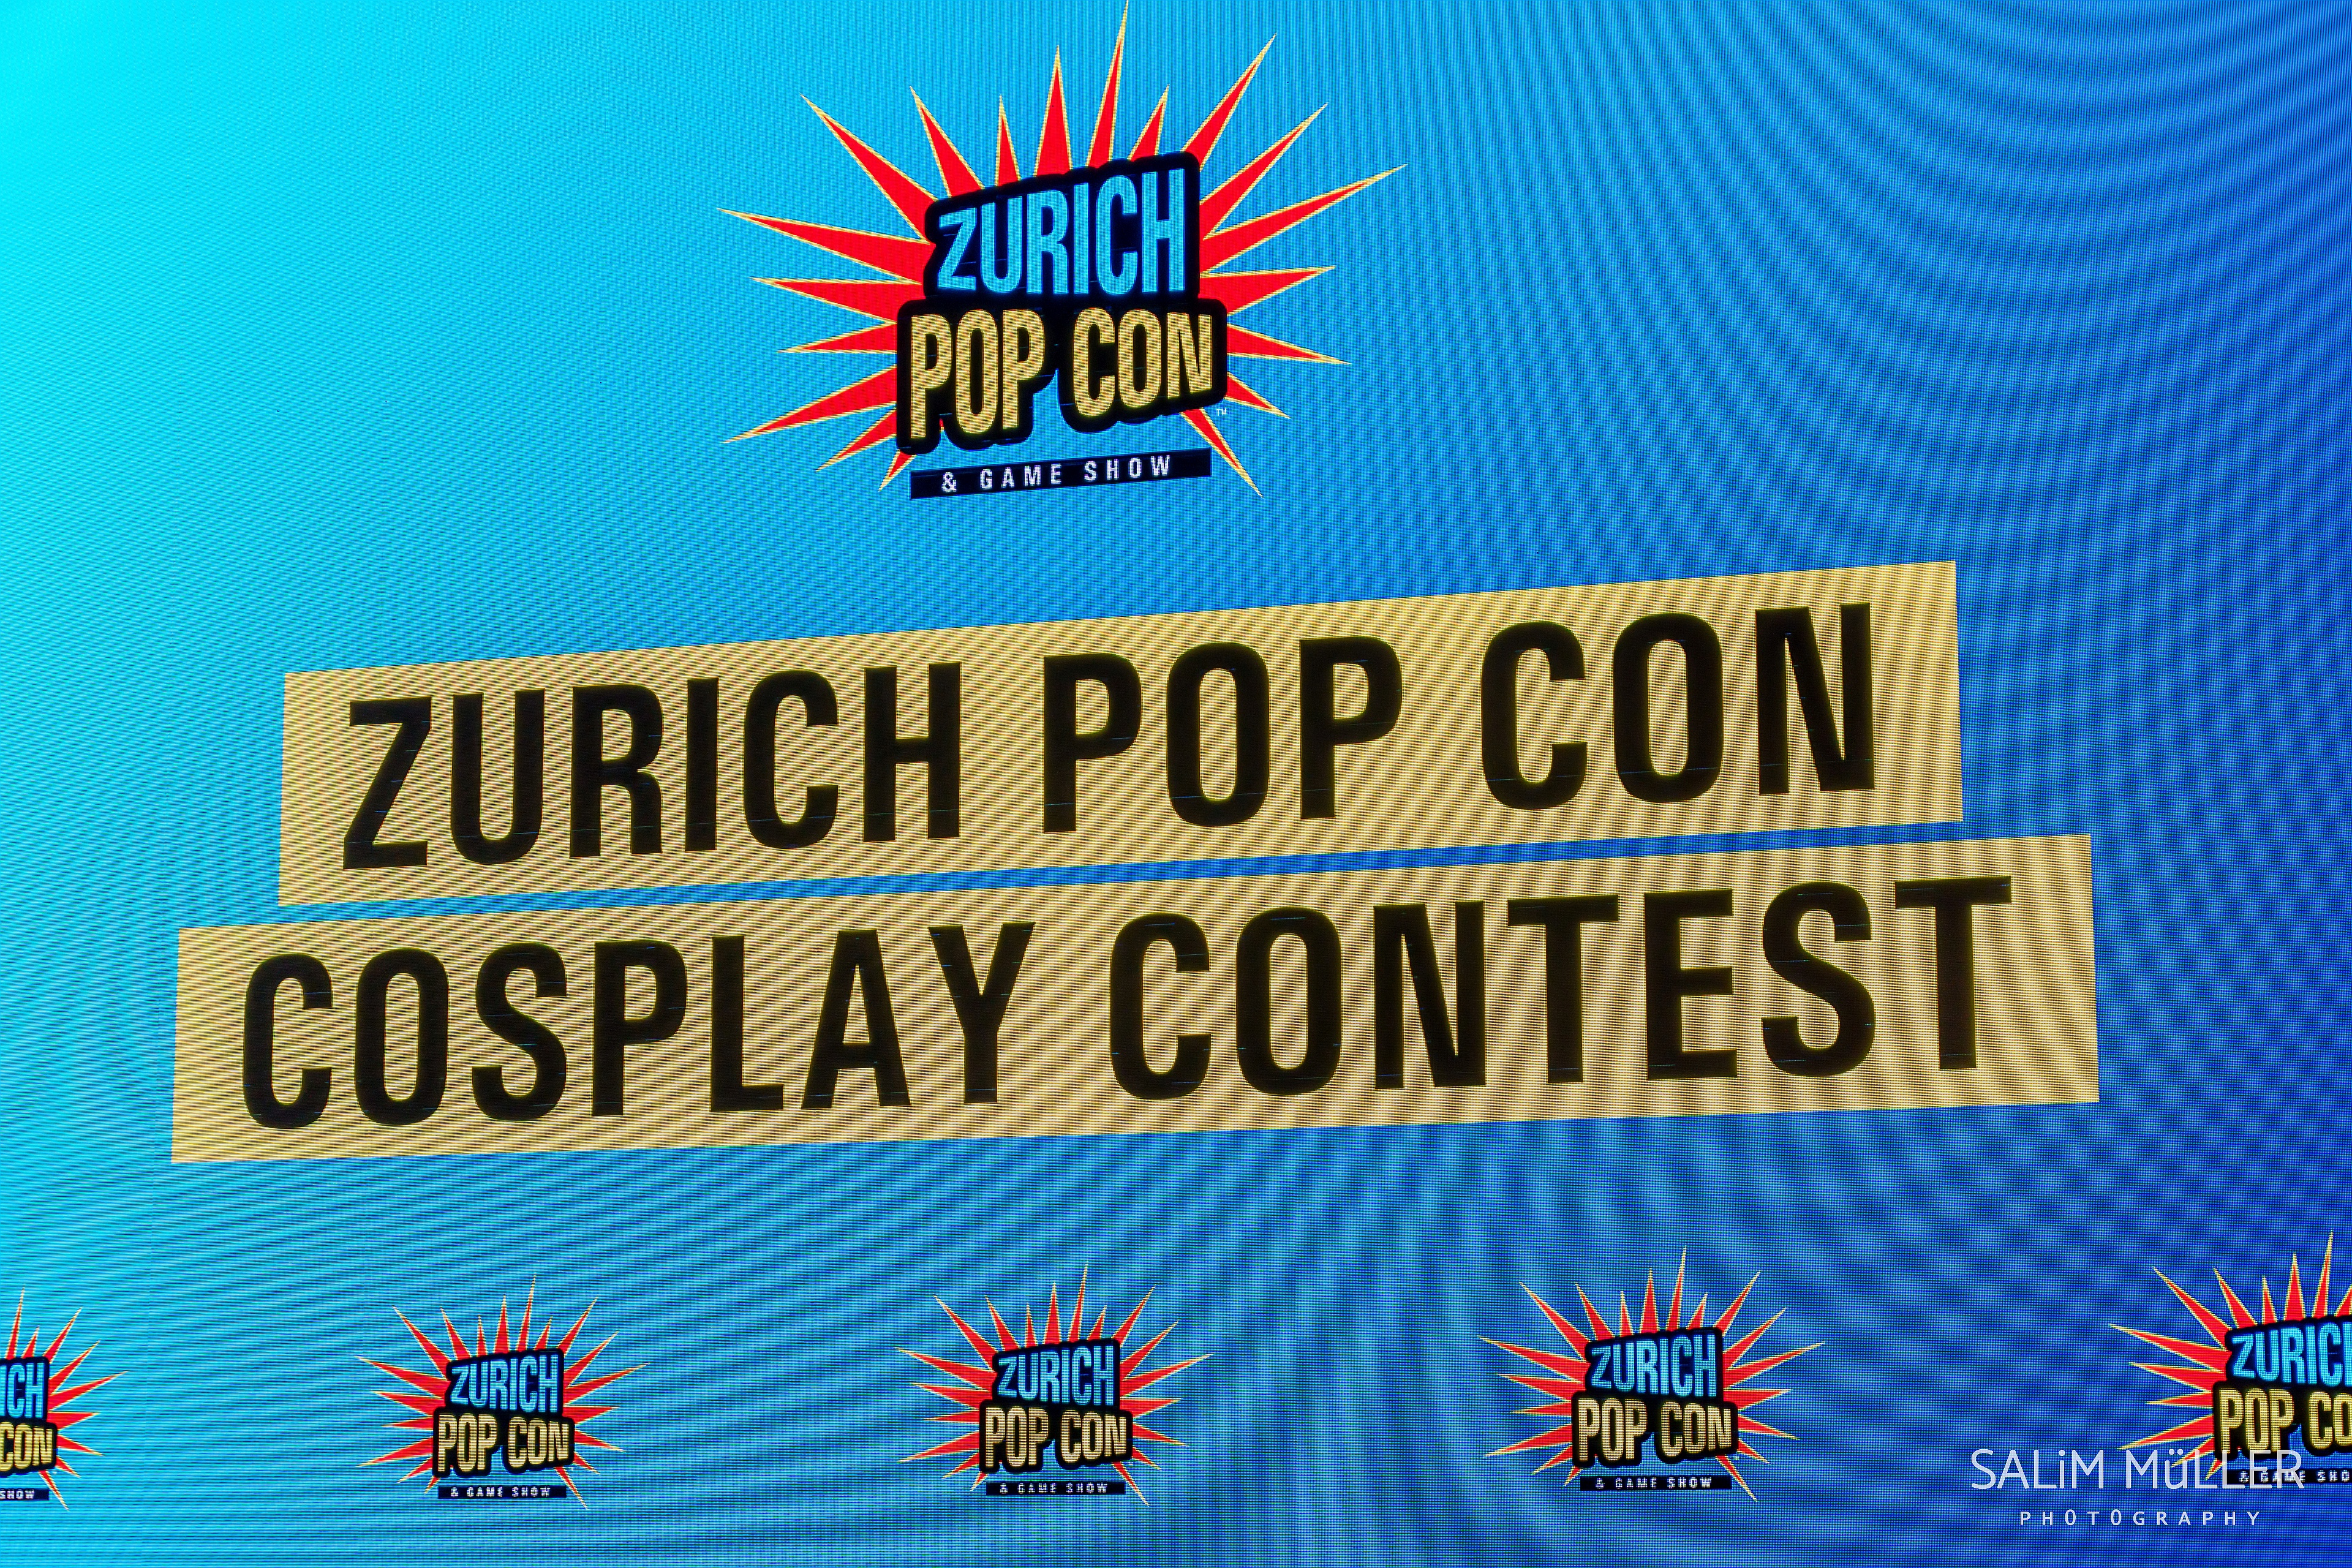 Zrich PopCon & Game Show - Day 1 - Cosplay Contest - 002